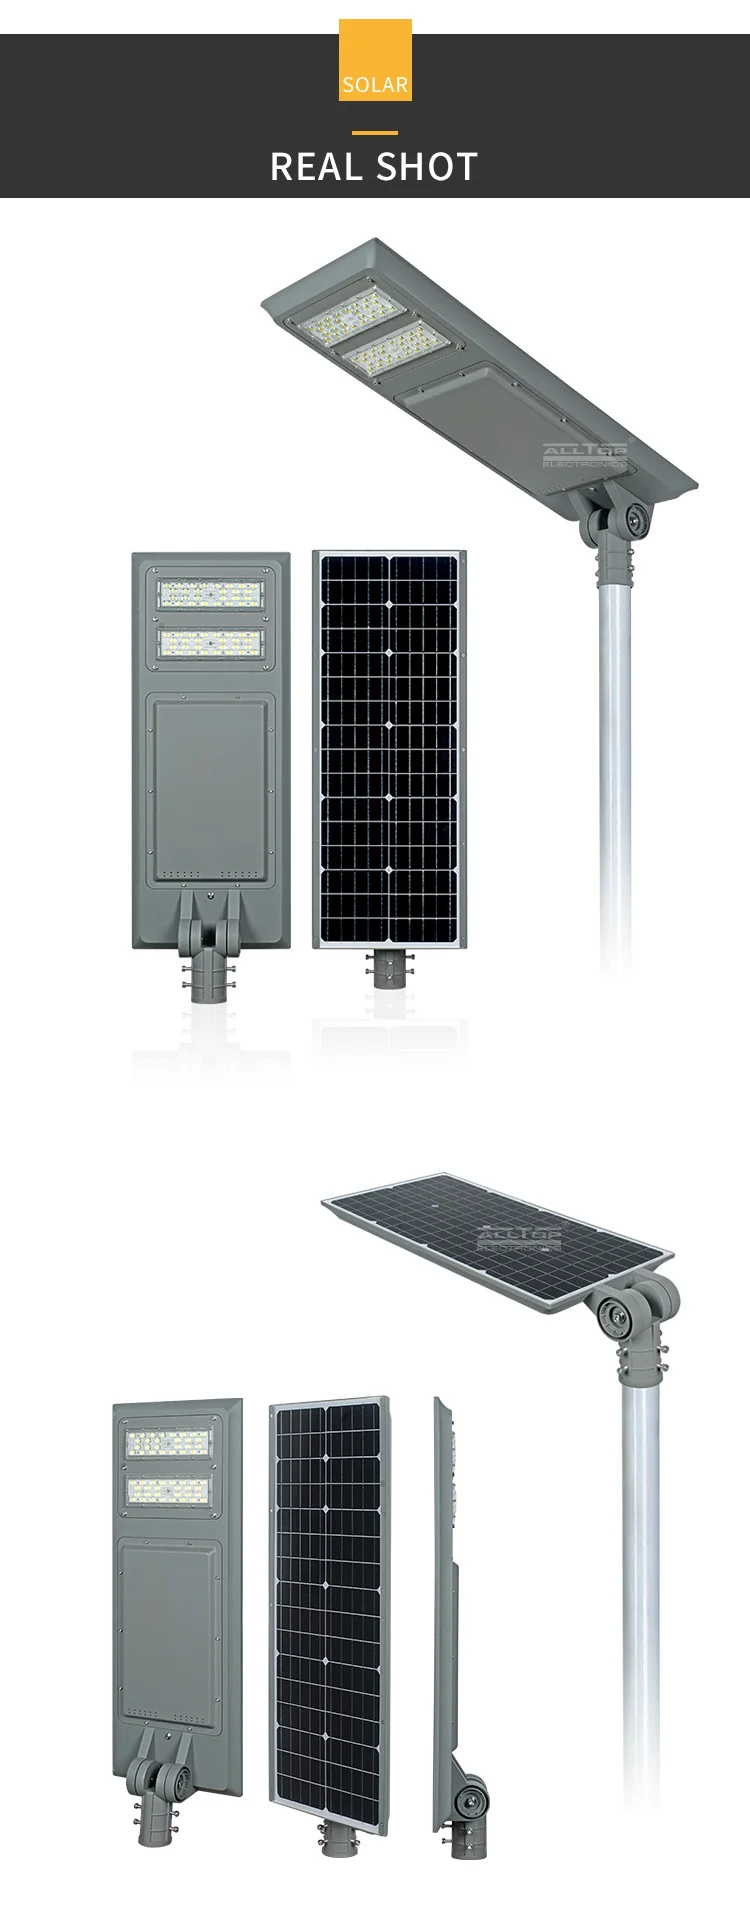 ALLTOP Outdoor IP65 intelligent sensor 40watt 60watt 100watt all in one solar led street light price